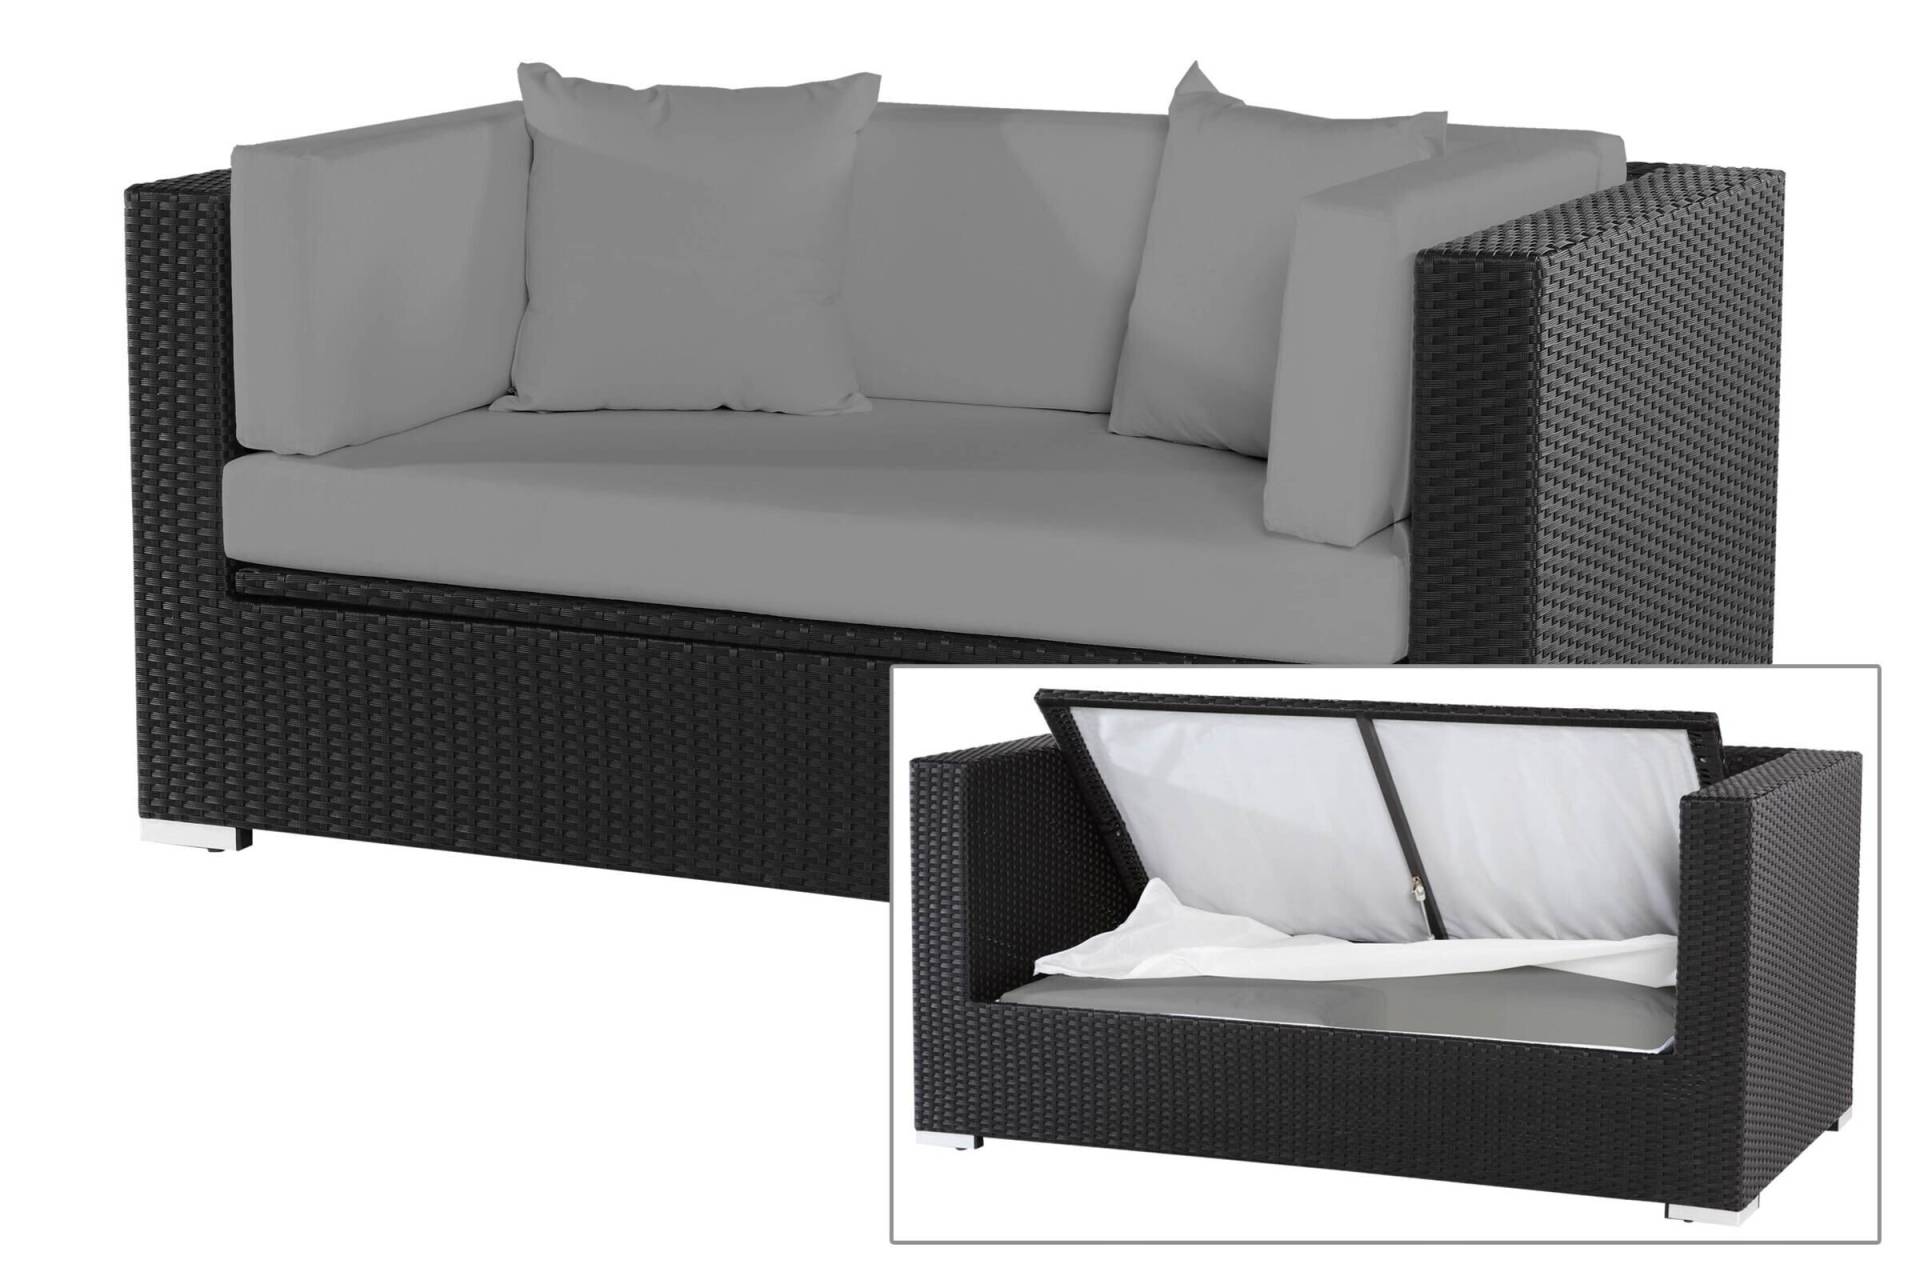 OUTFLEXX 2-Sitzer Sofa, schwarz, Polyrattan 152x85x70cm, inkl. Polster und wasserfeste Kissenbox von OUTFLEXX